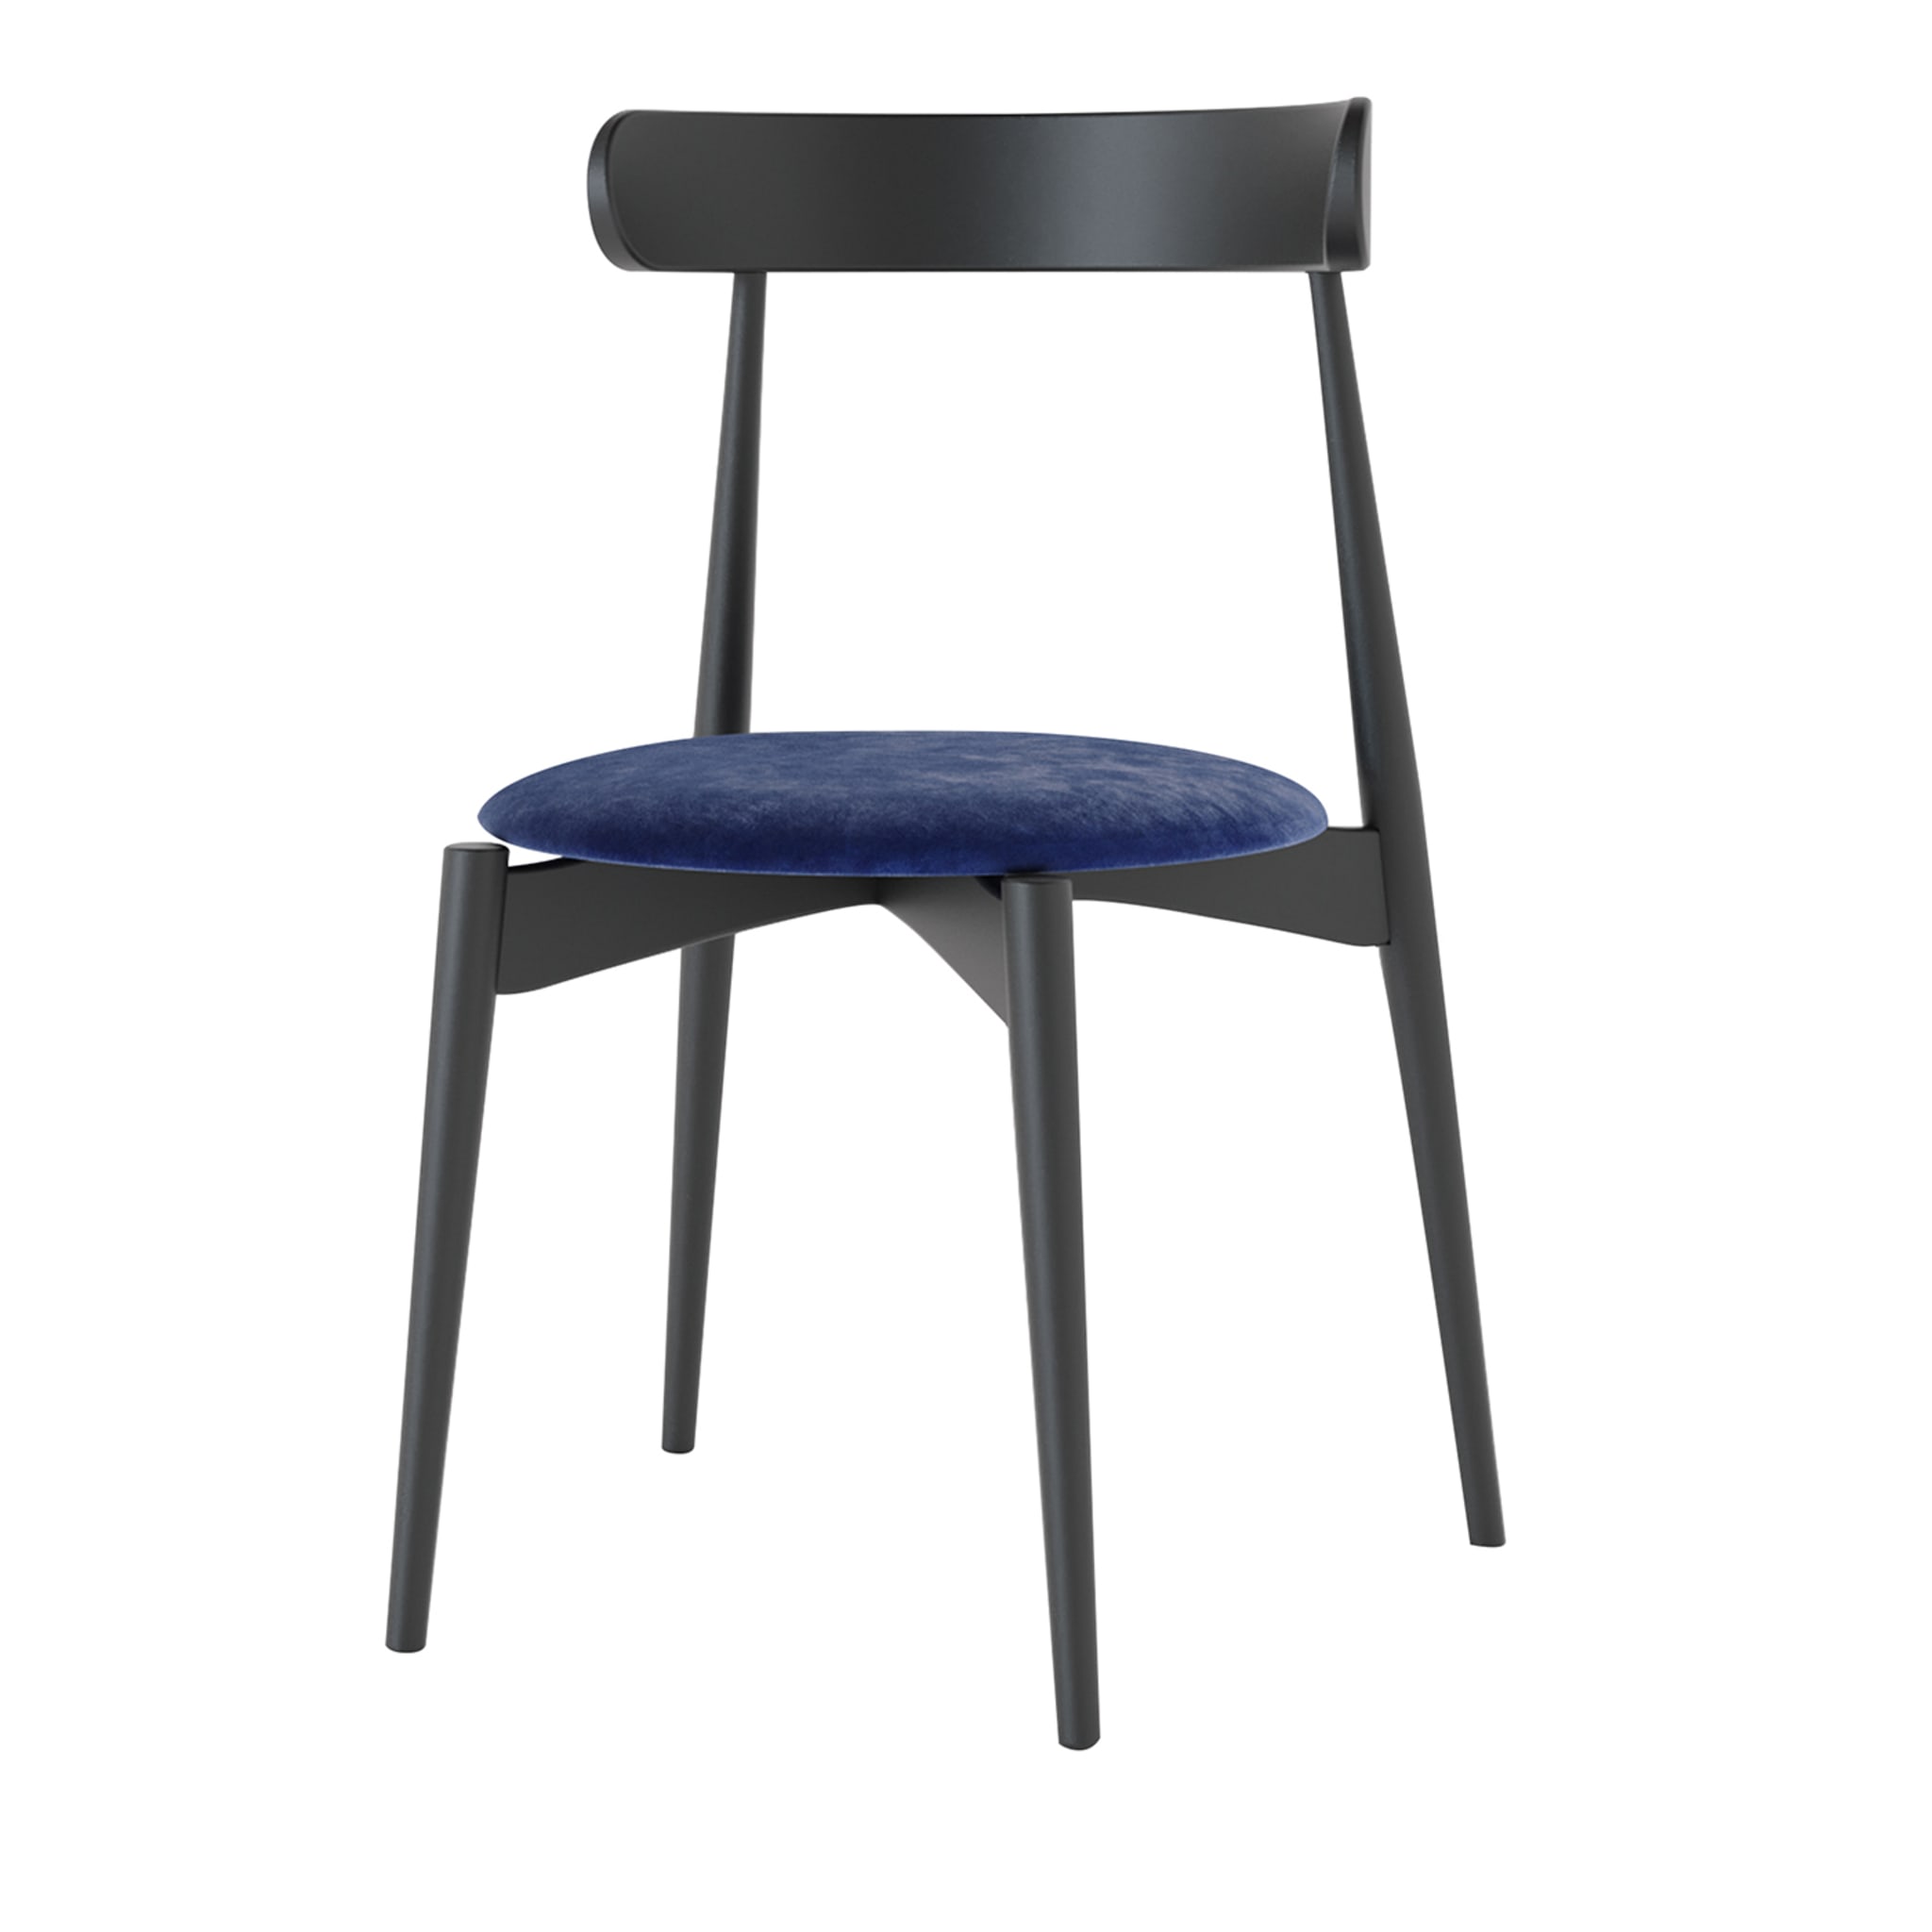 Zord Black & Blue Chair - Main view